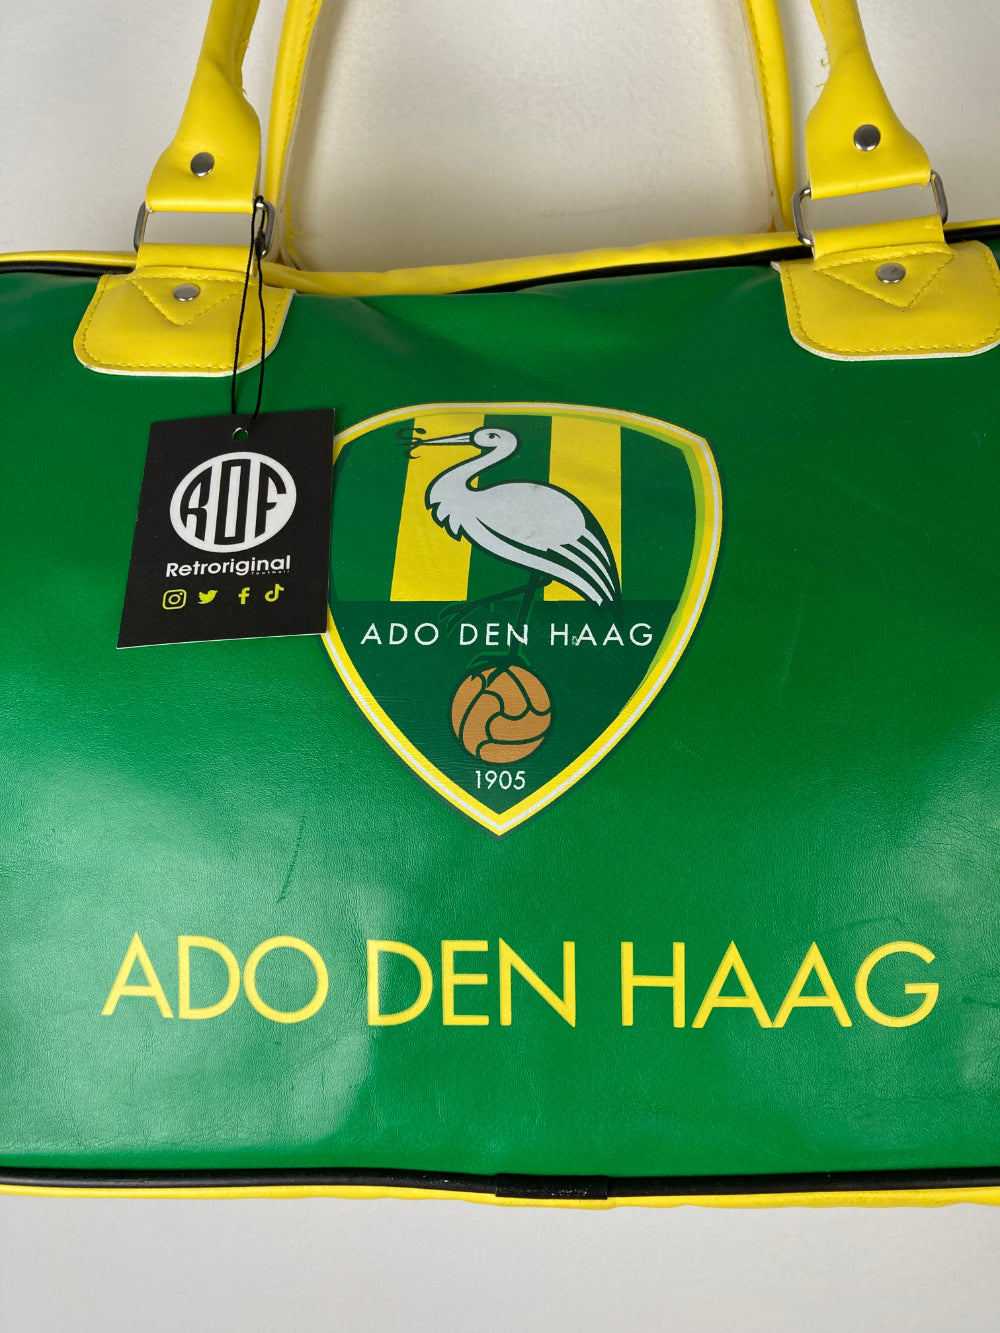 
                  
                    Original ADO Den Haag Bag
                  
                